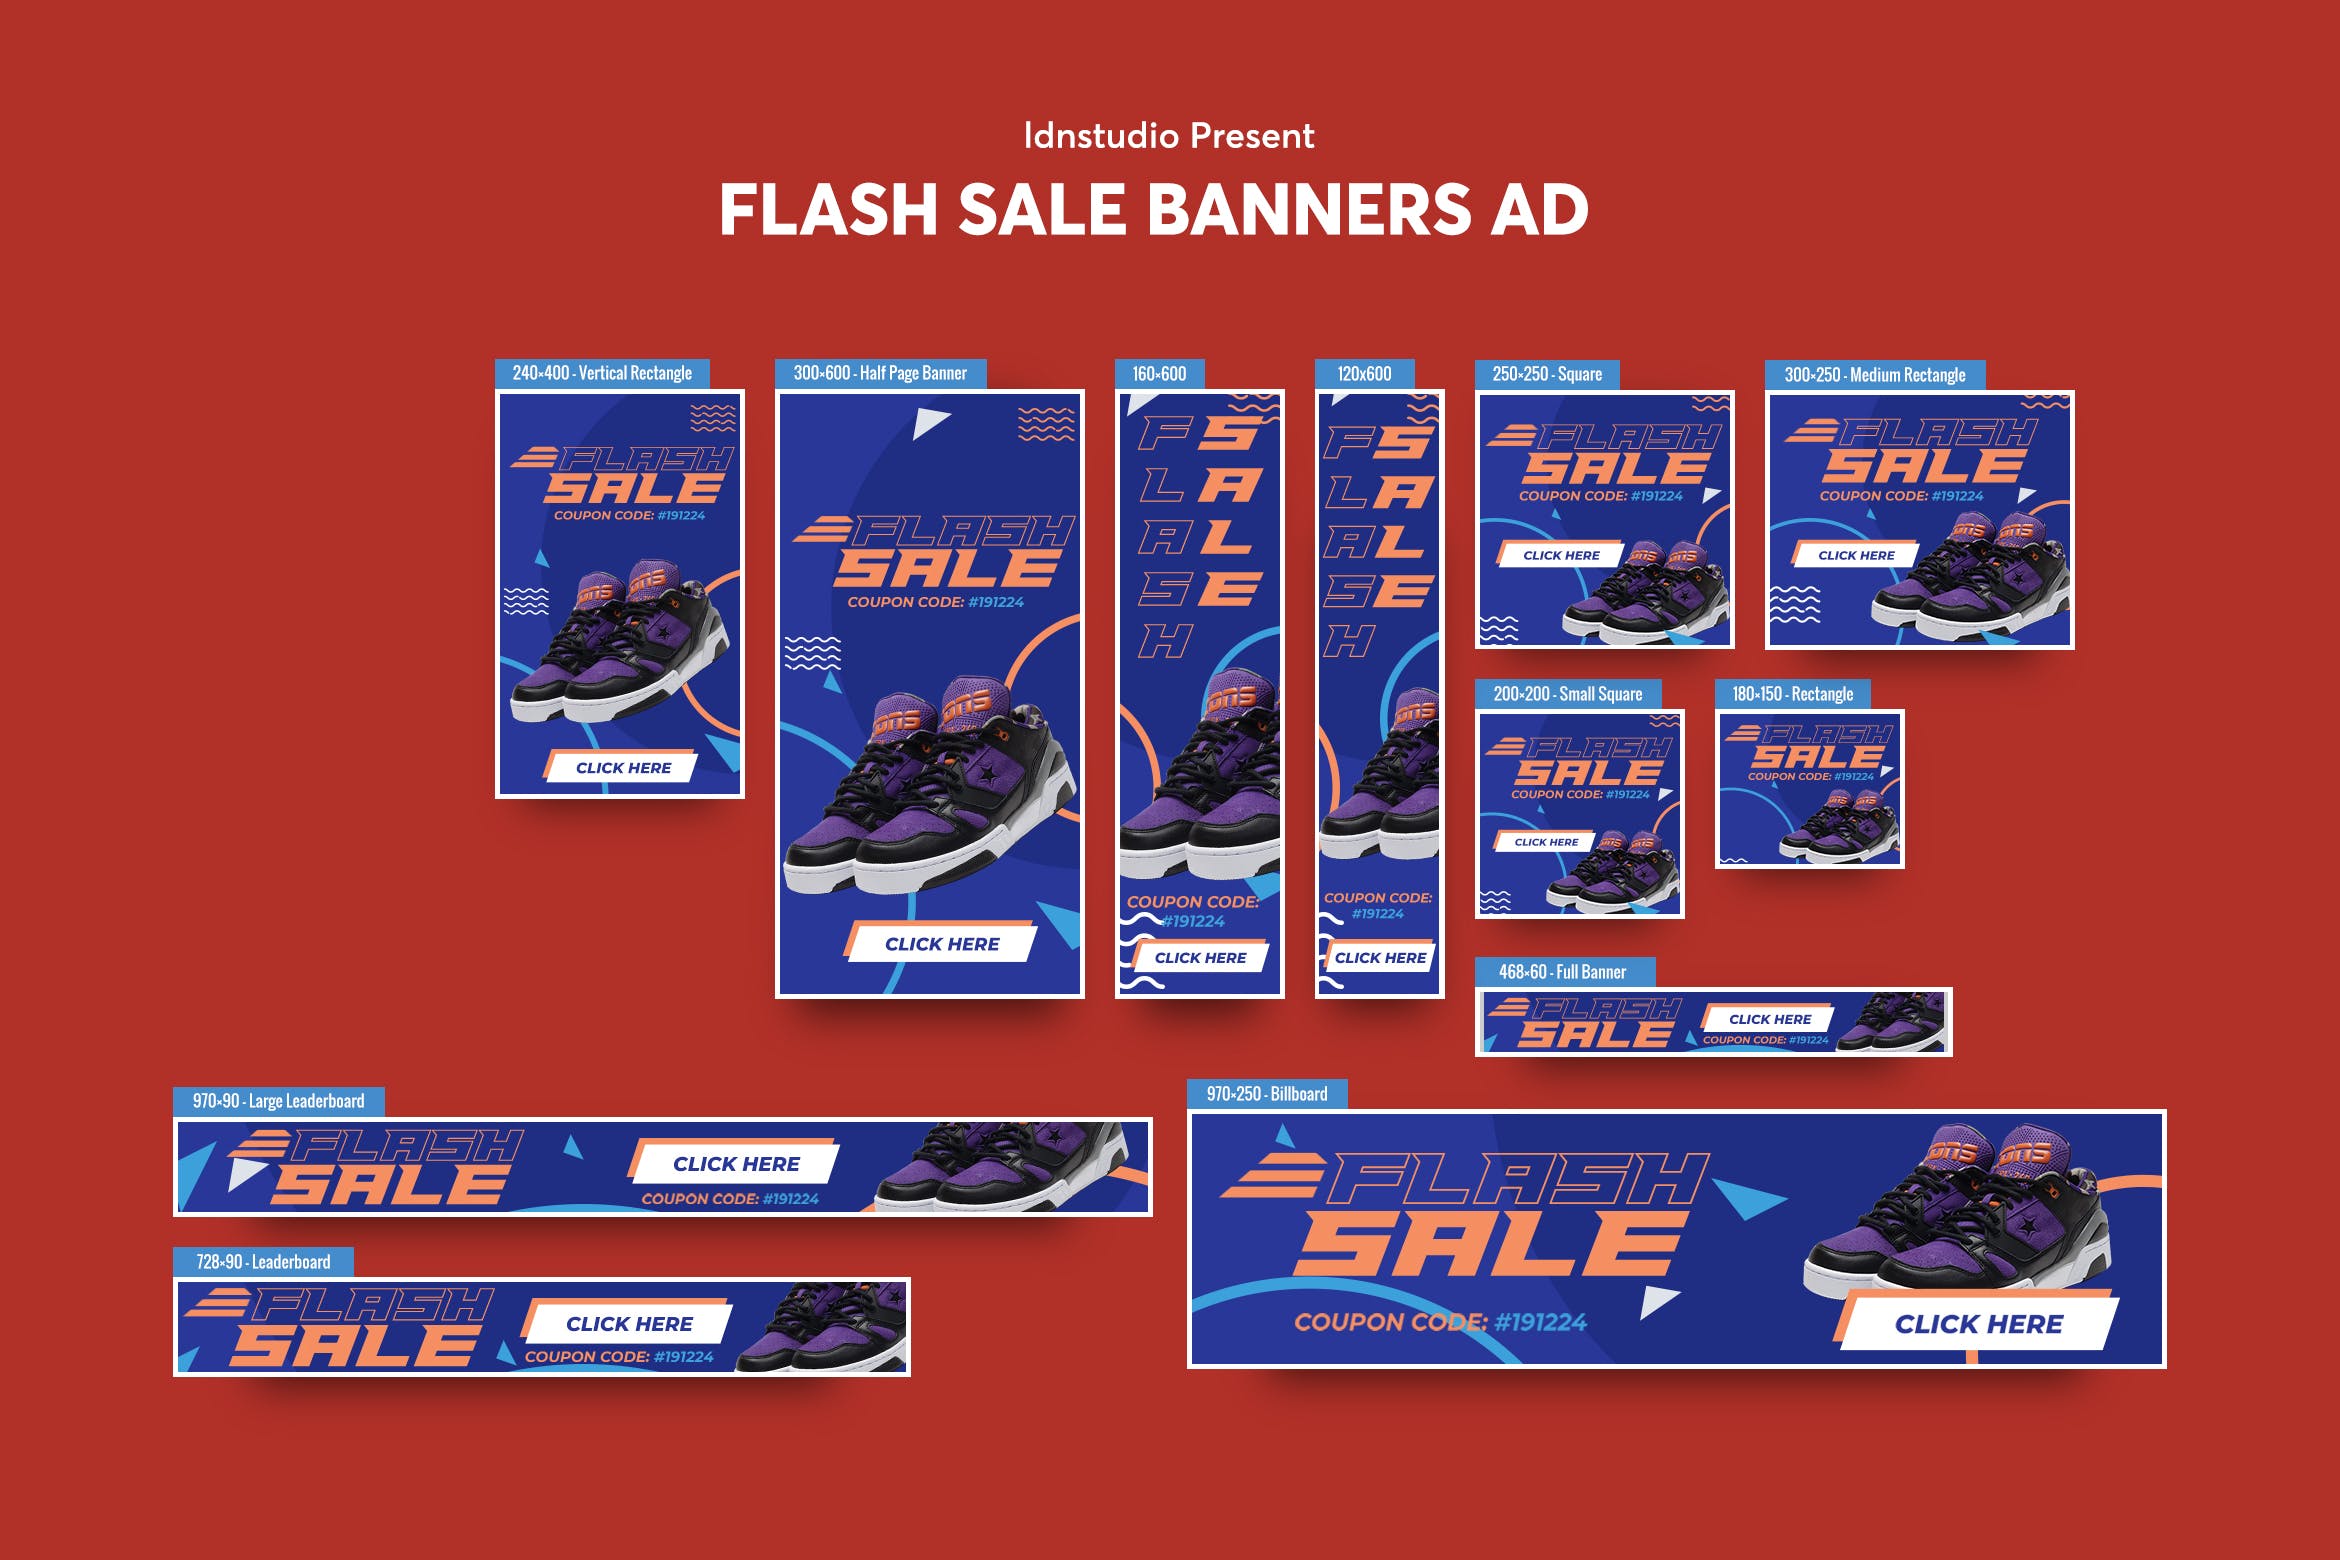 时尚产品促销网站常见尺寸广告图设计模板 Flash Sale Banners Ad插图